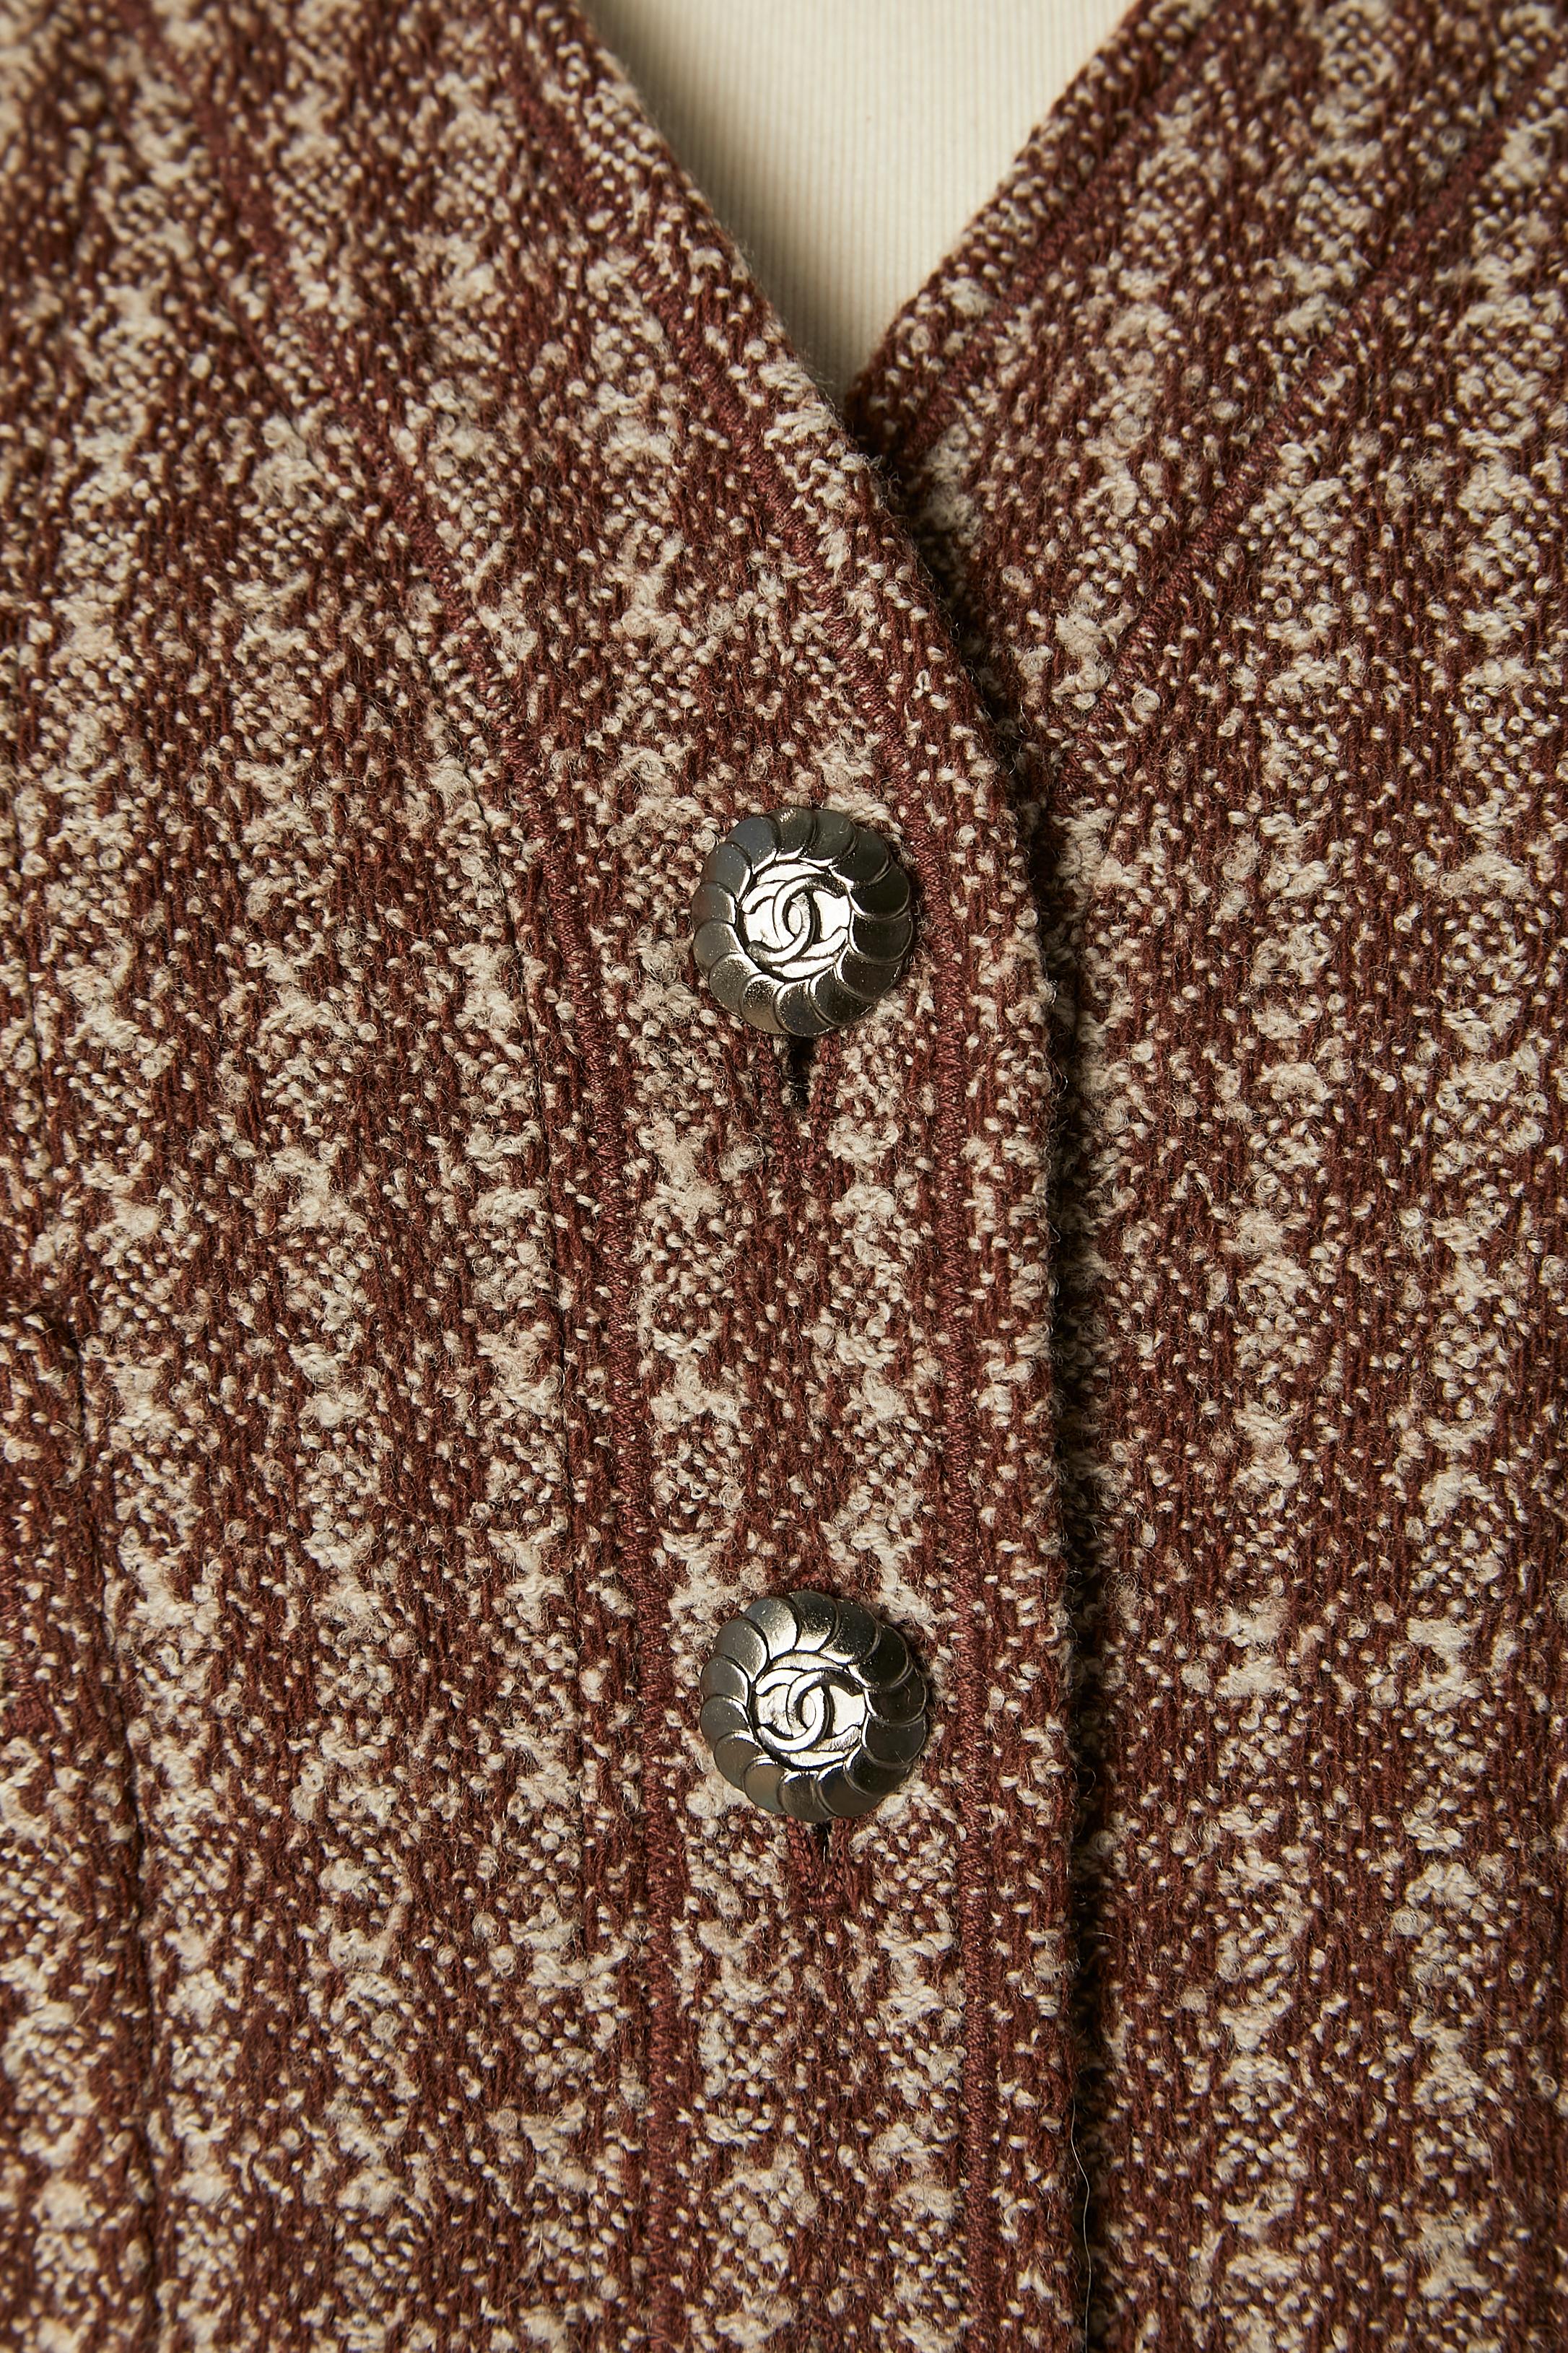 Combinaison en tweed marron avec jupe plissée. Composition du tissu : 90% laine, 10% nylon. Doublure : 95% soie, 5% lycra. Doublure marquée 